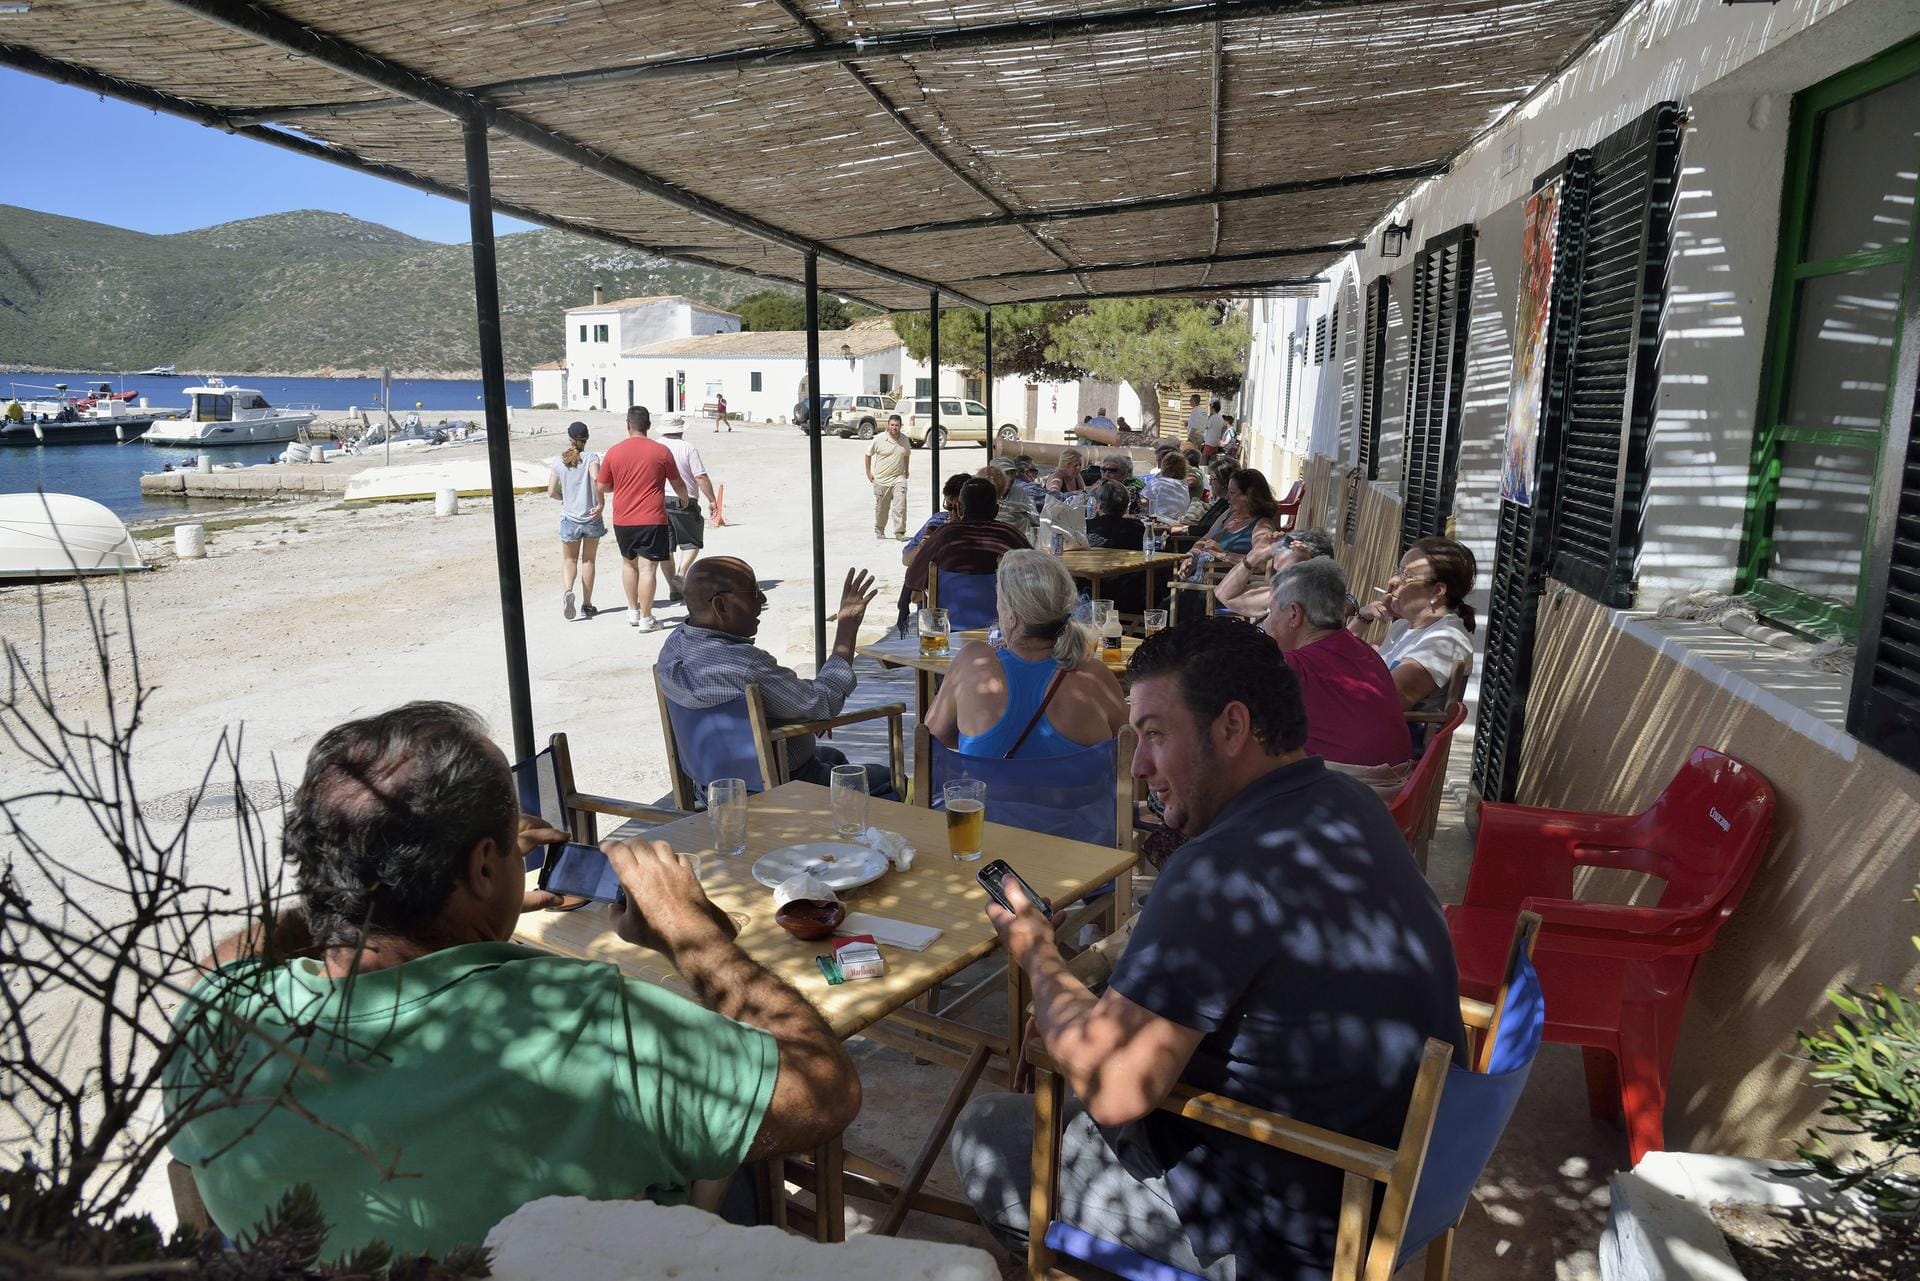 Anlaufpunkt auf der Insel ist das einzige Lokal - die "Cantina". Hier können Touristen ein kühles Bier beziehungsweise einen Kaffee trinken. Oder sie essen eine Kleinigkeit.